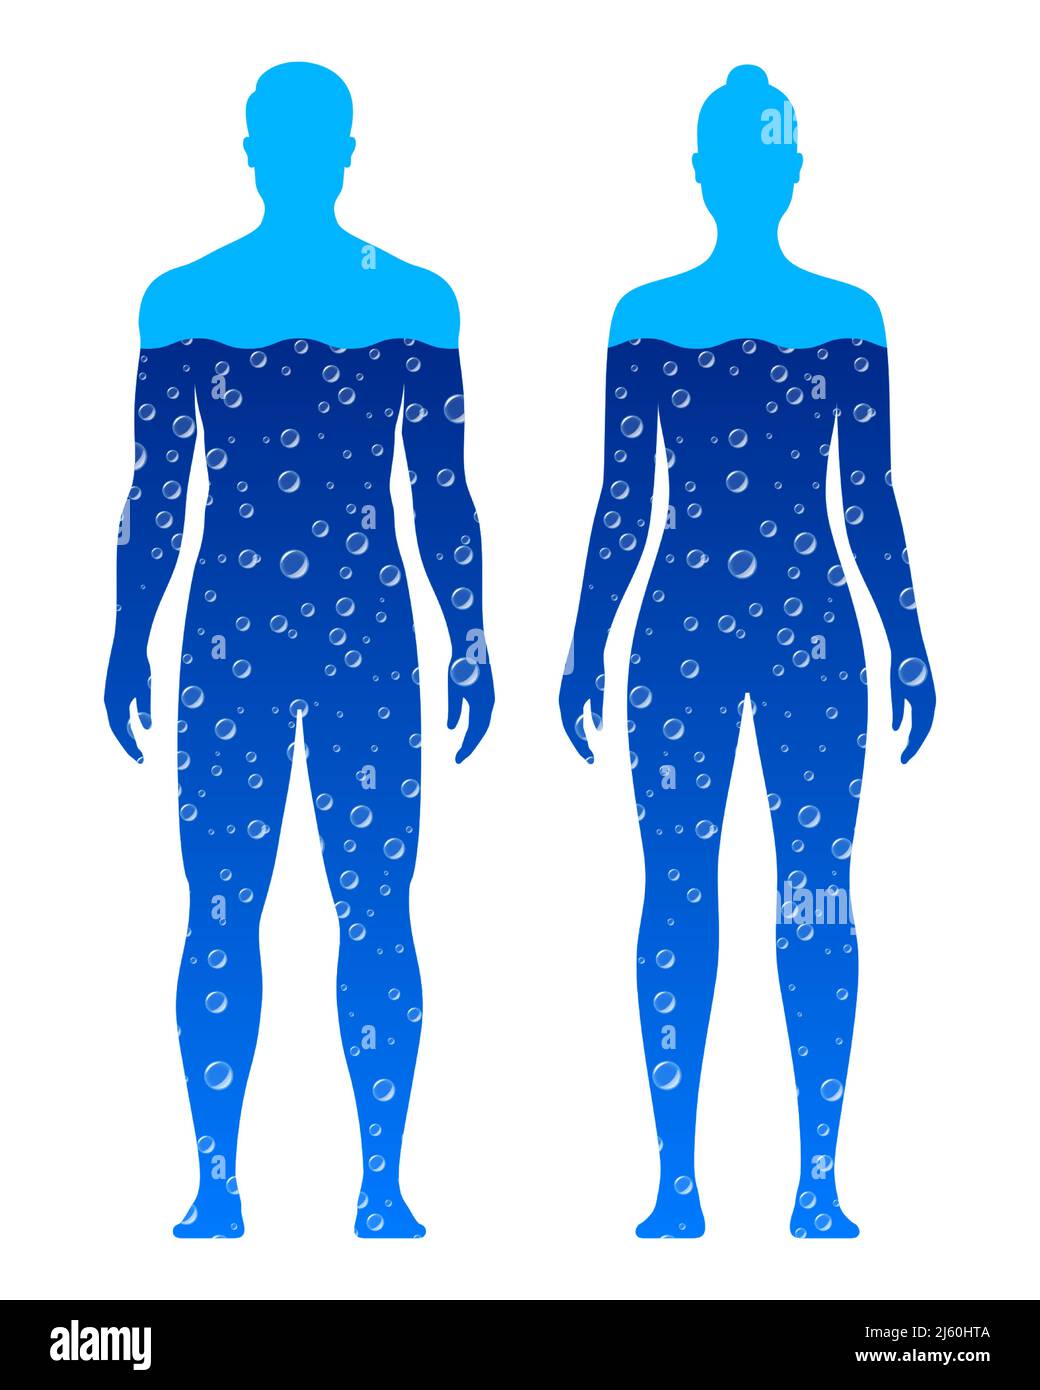 Silhouette corpo maschile e femminile, piene di acqua blu, isolate su sfondo bianco. Illustrazione del vettore della composizione dell'acqua del corpo umano. Illustrazione Vettoriale